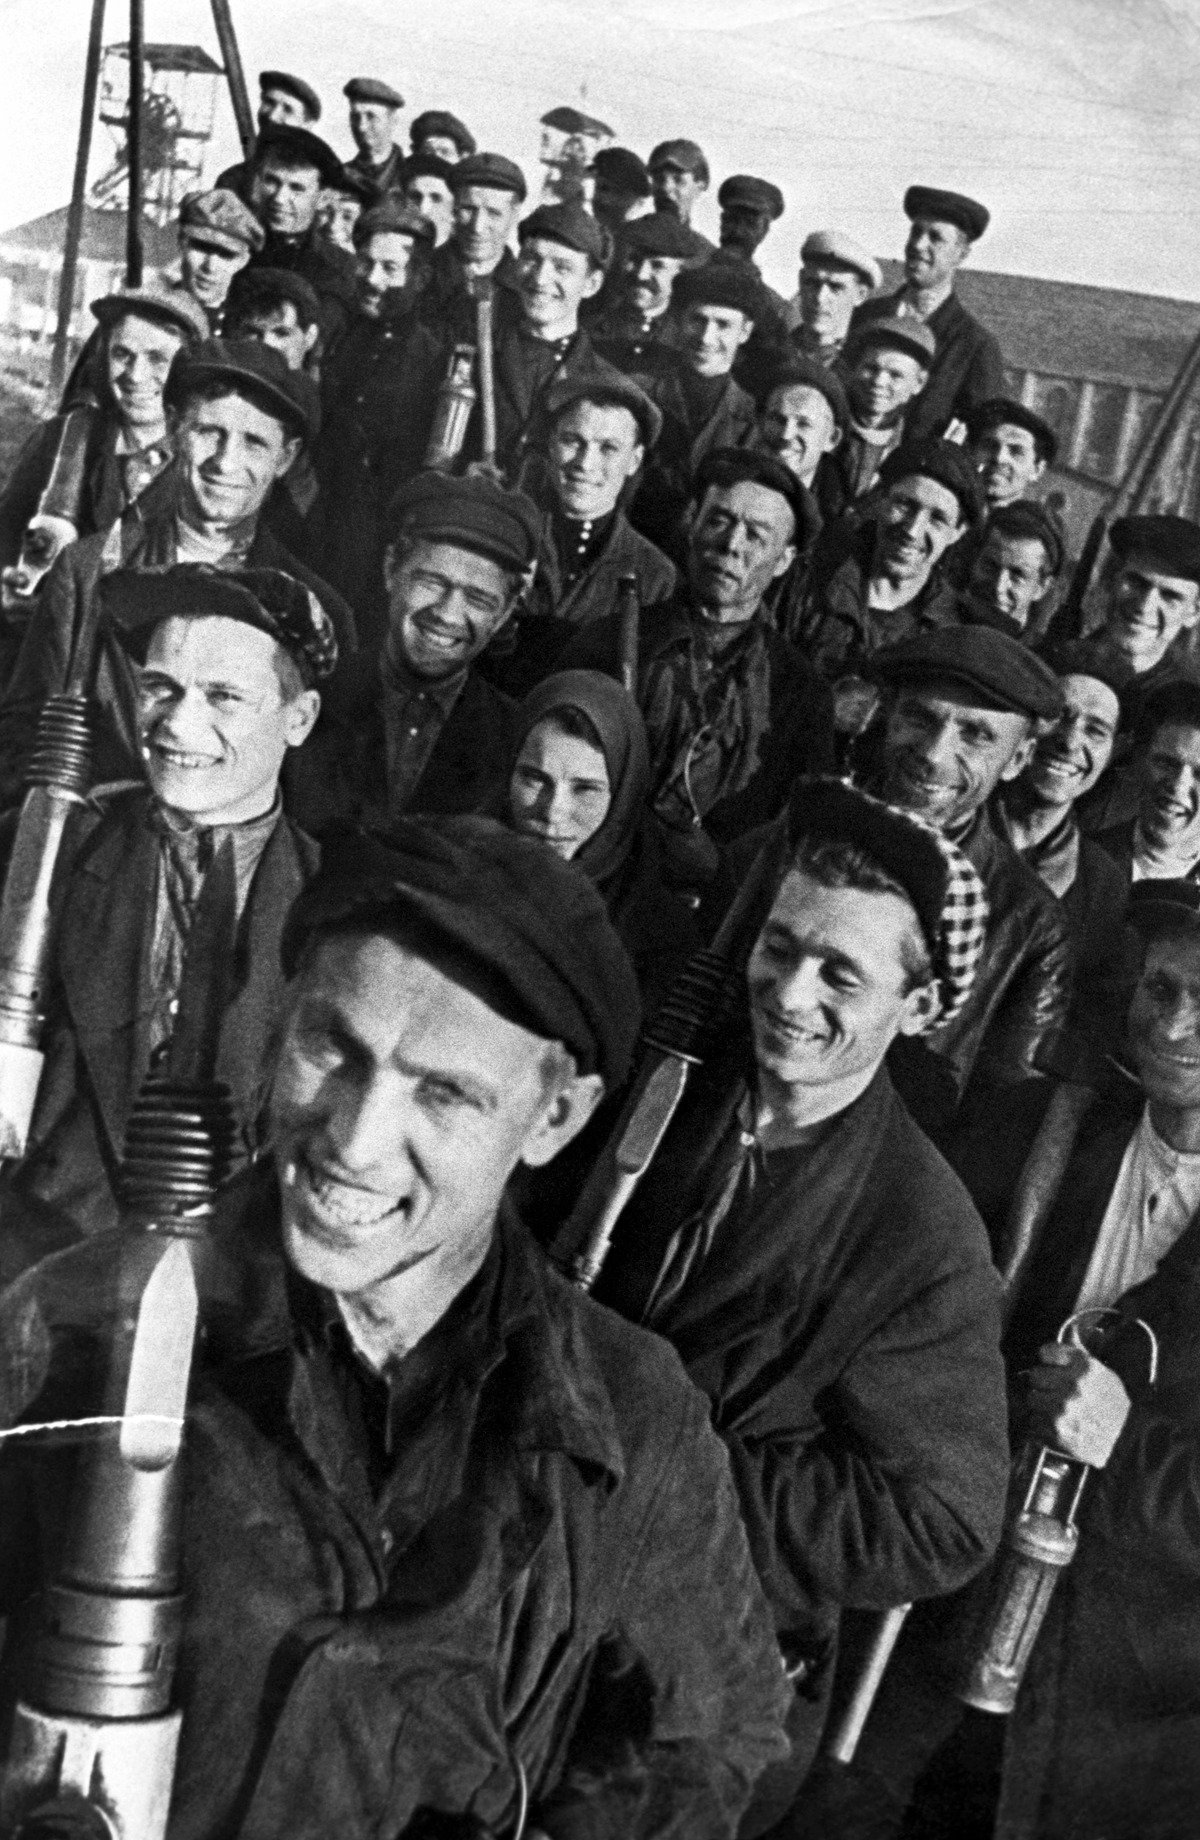 Основоположник стахановского движения Алексей Стаханов со своей бригадой, 1935 г. Фото: репродукция ТАСС